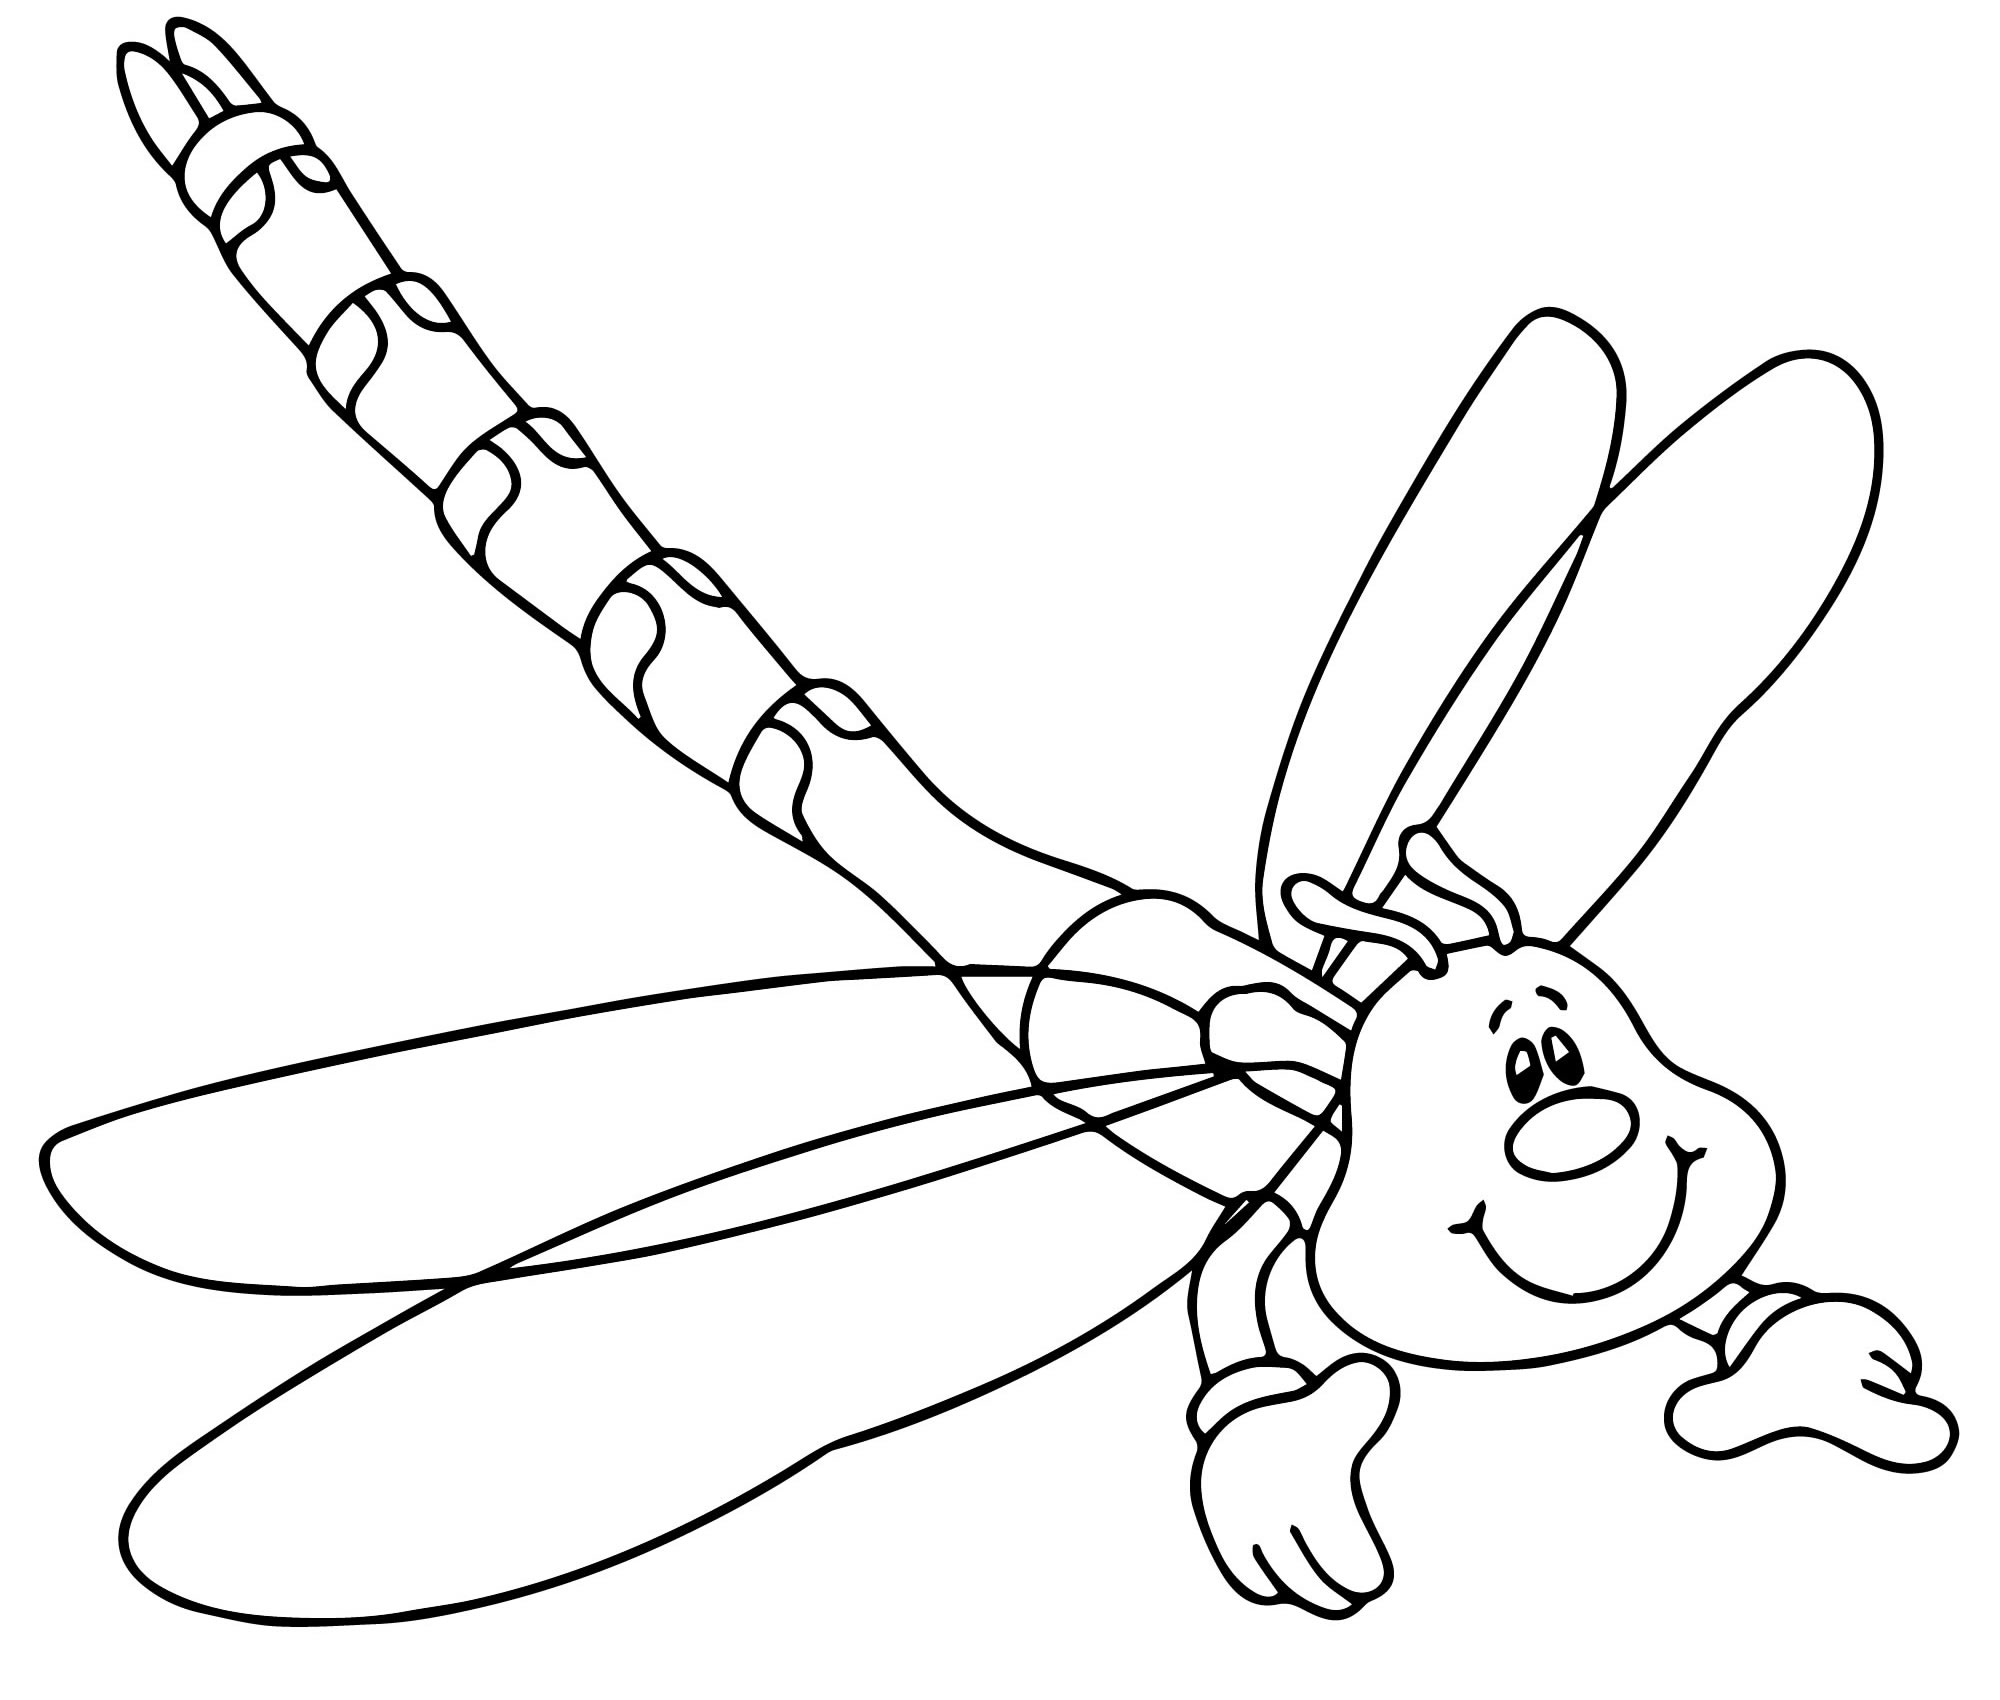 Картинки для раскрашивания насекомые для детей